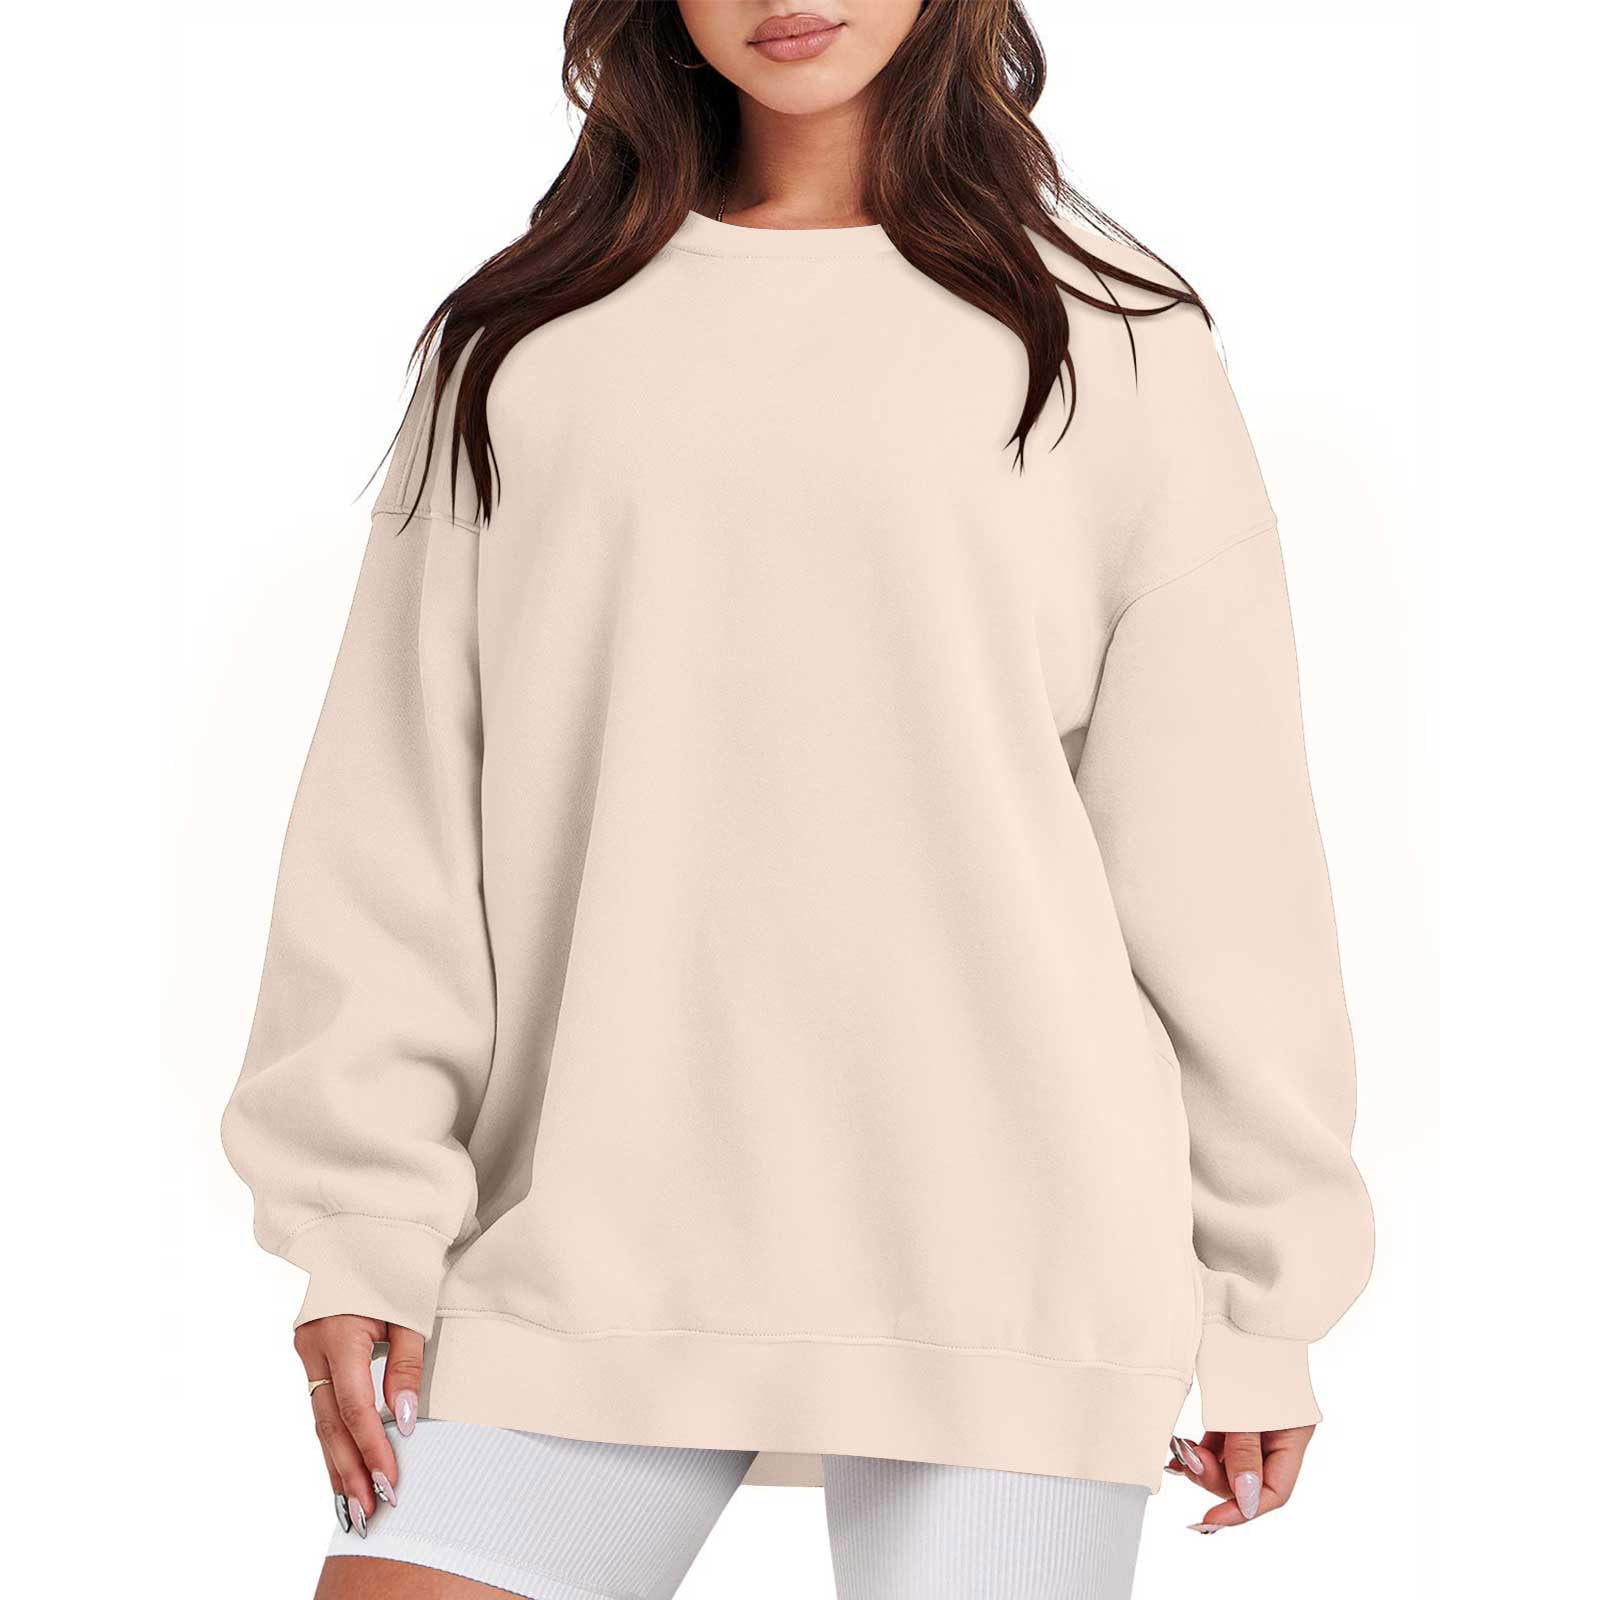 YYDGH Oversized Sweatshirt for Women Fleece Long Sleeve Crewneck